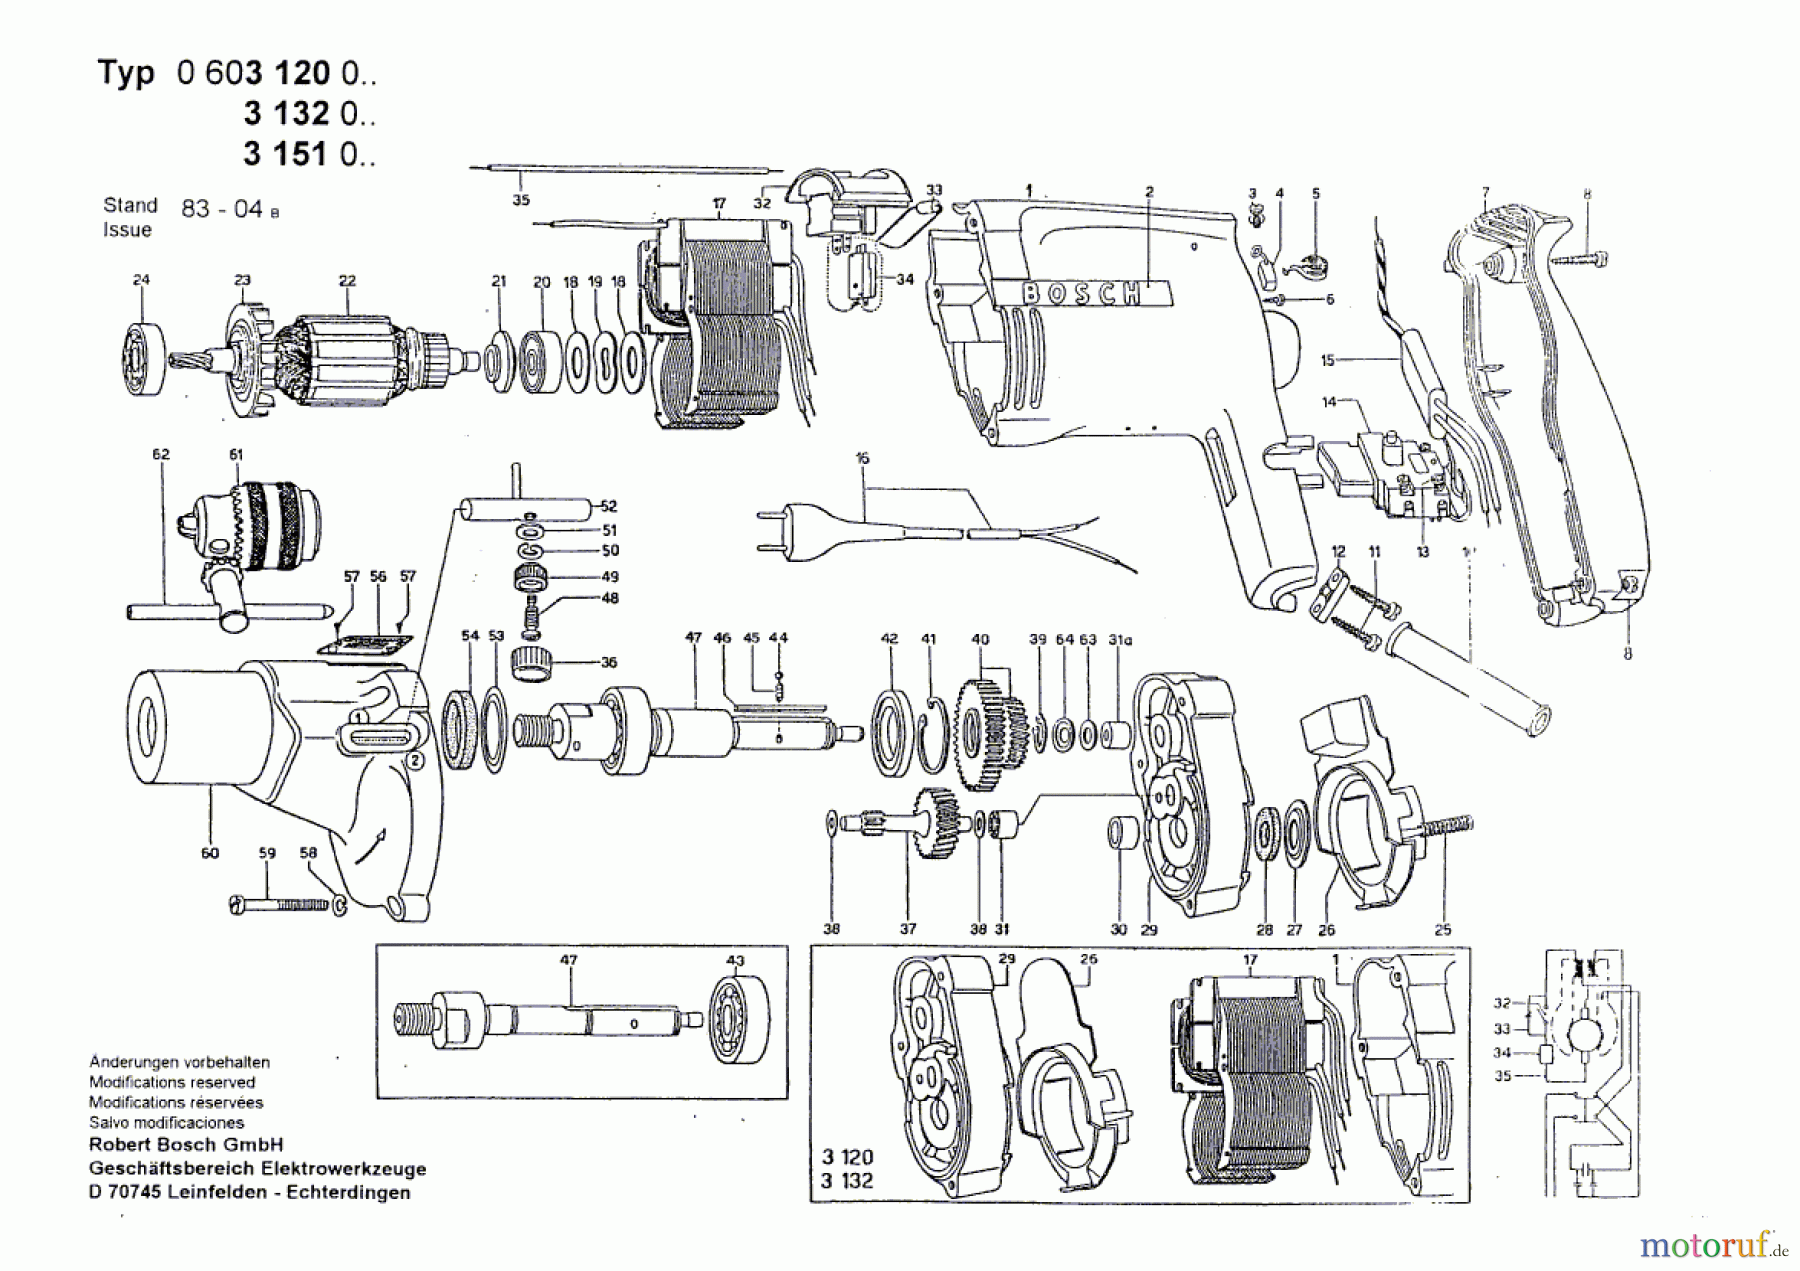  Bosch Werkzeug Bohrmaschine M 41 S Seite 1